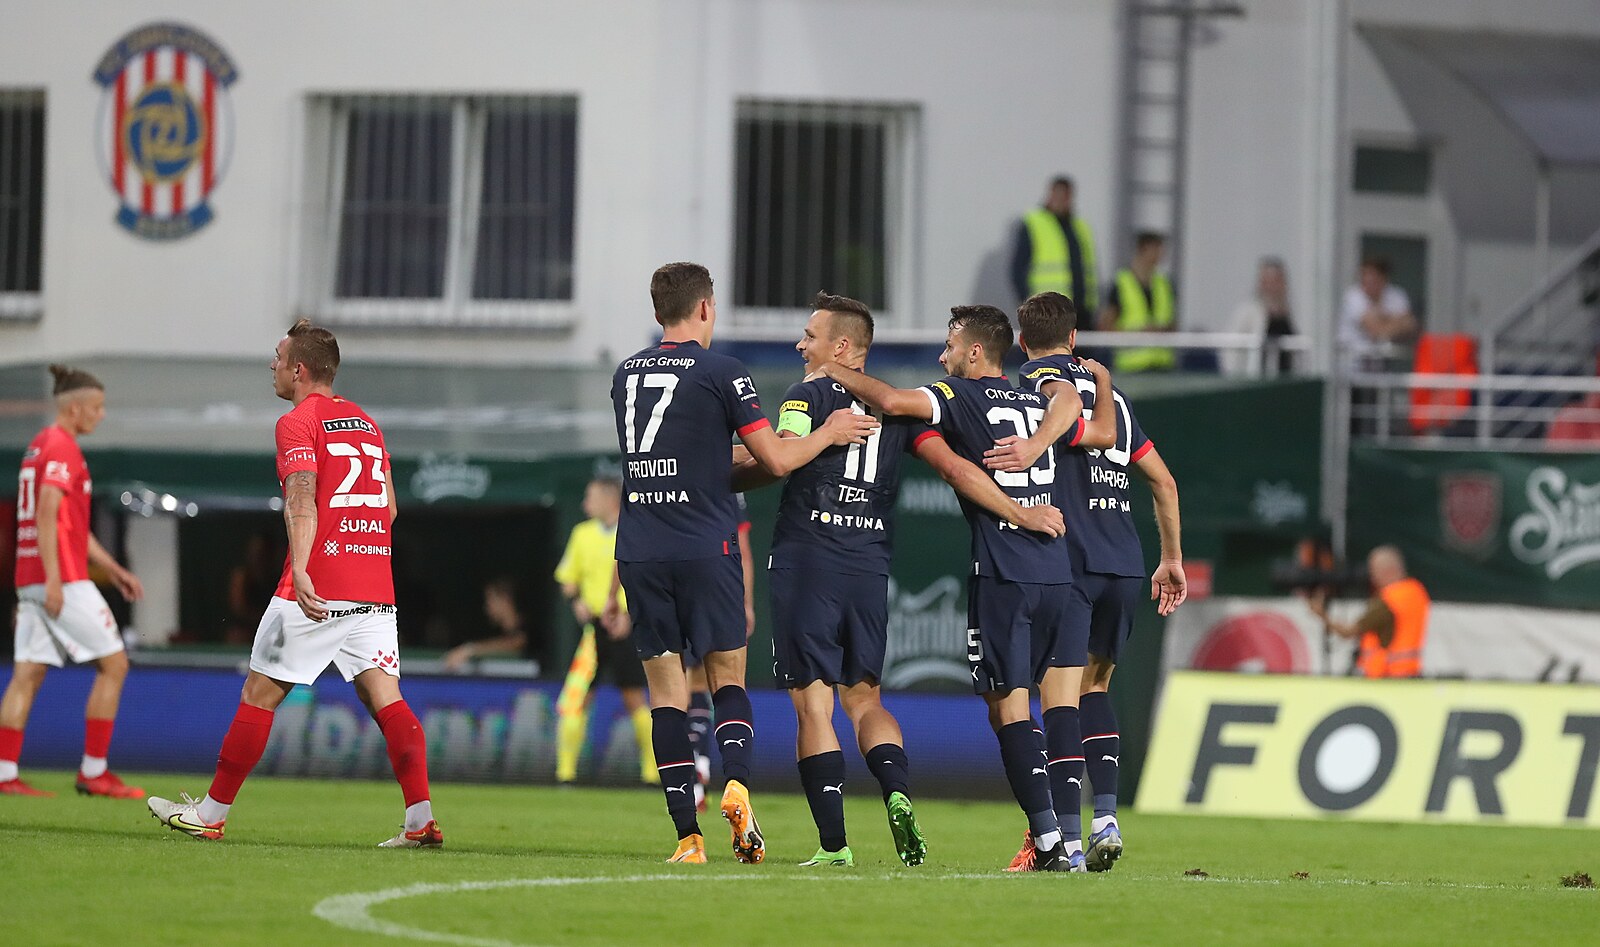 Brno - Slavia 0:4, hosté byli poločas v oslabení. I tak soupeře přehrávali  - iDNES.cz